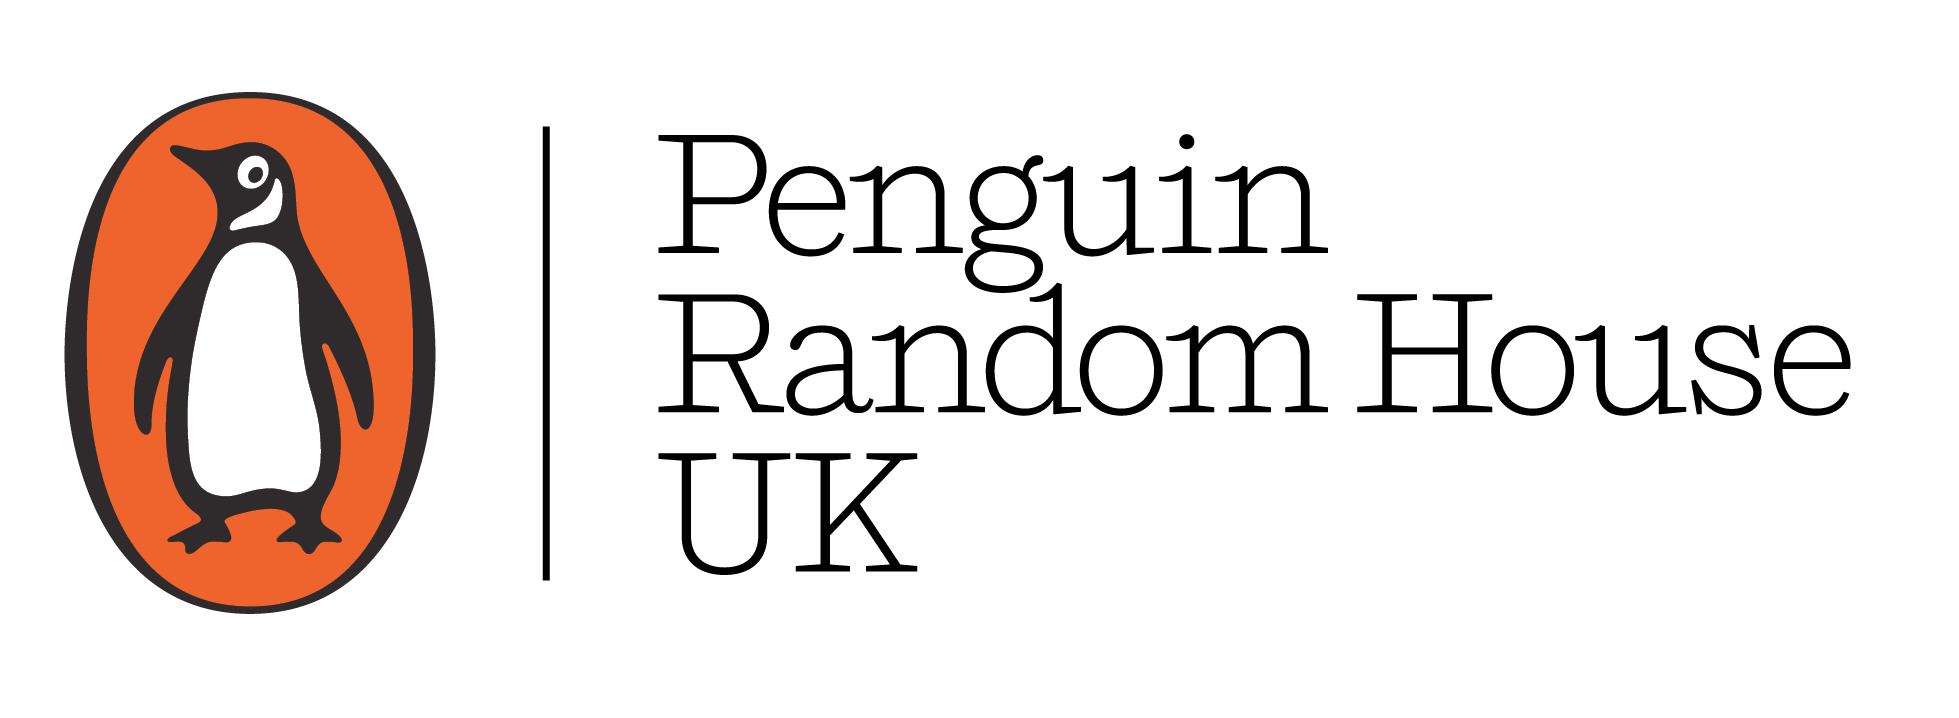 Penguin-Random-House-UK-logo.jpg